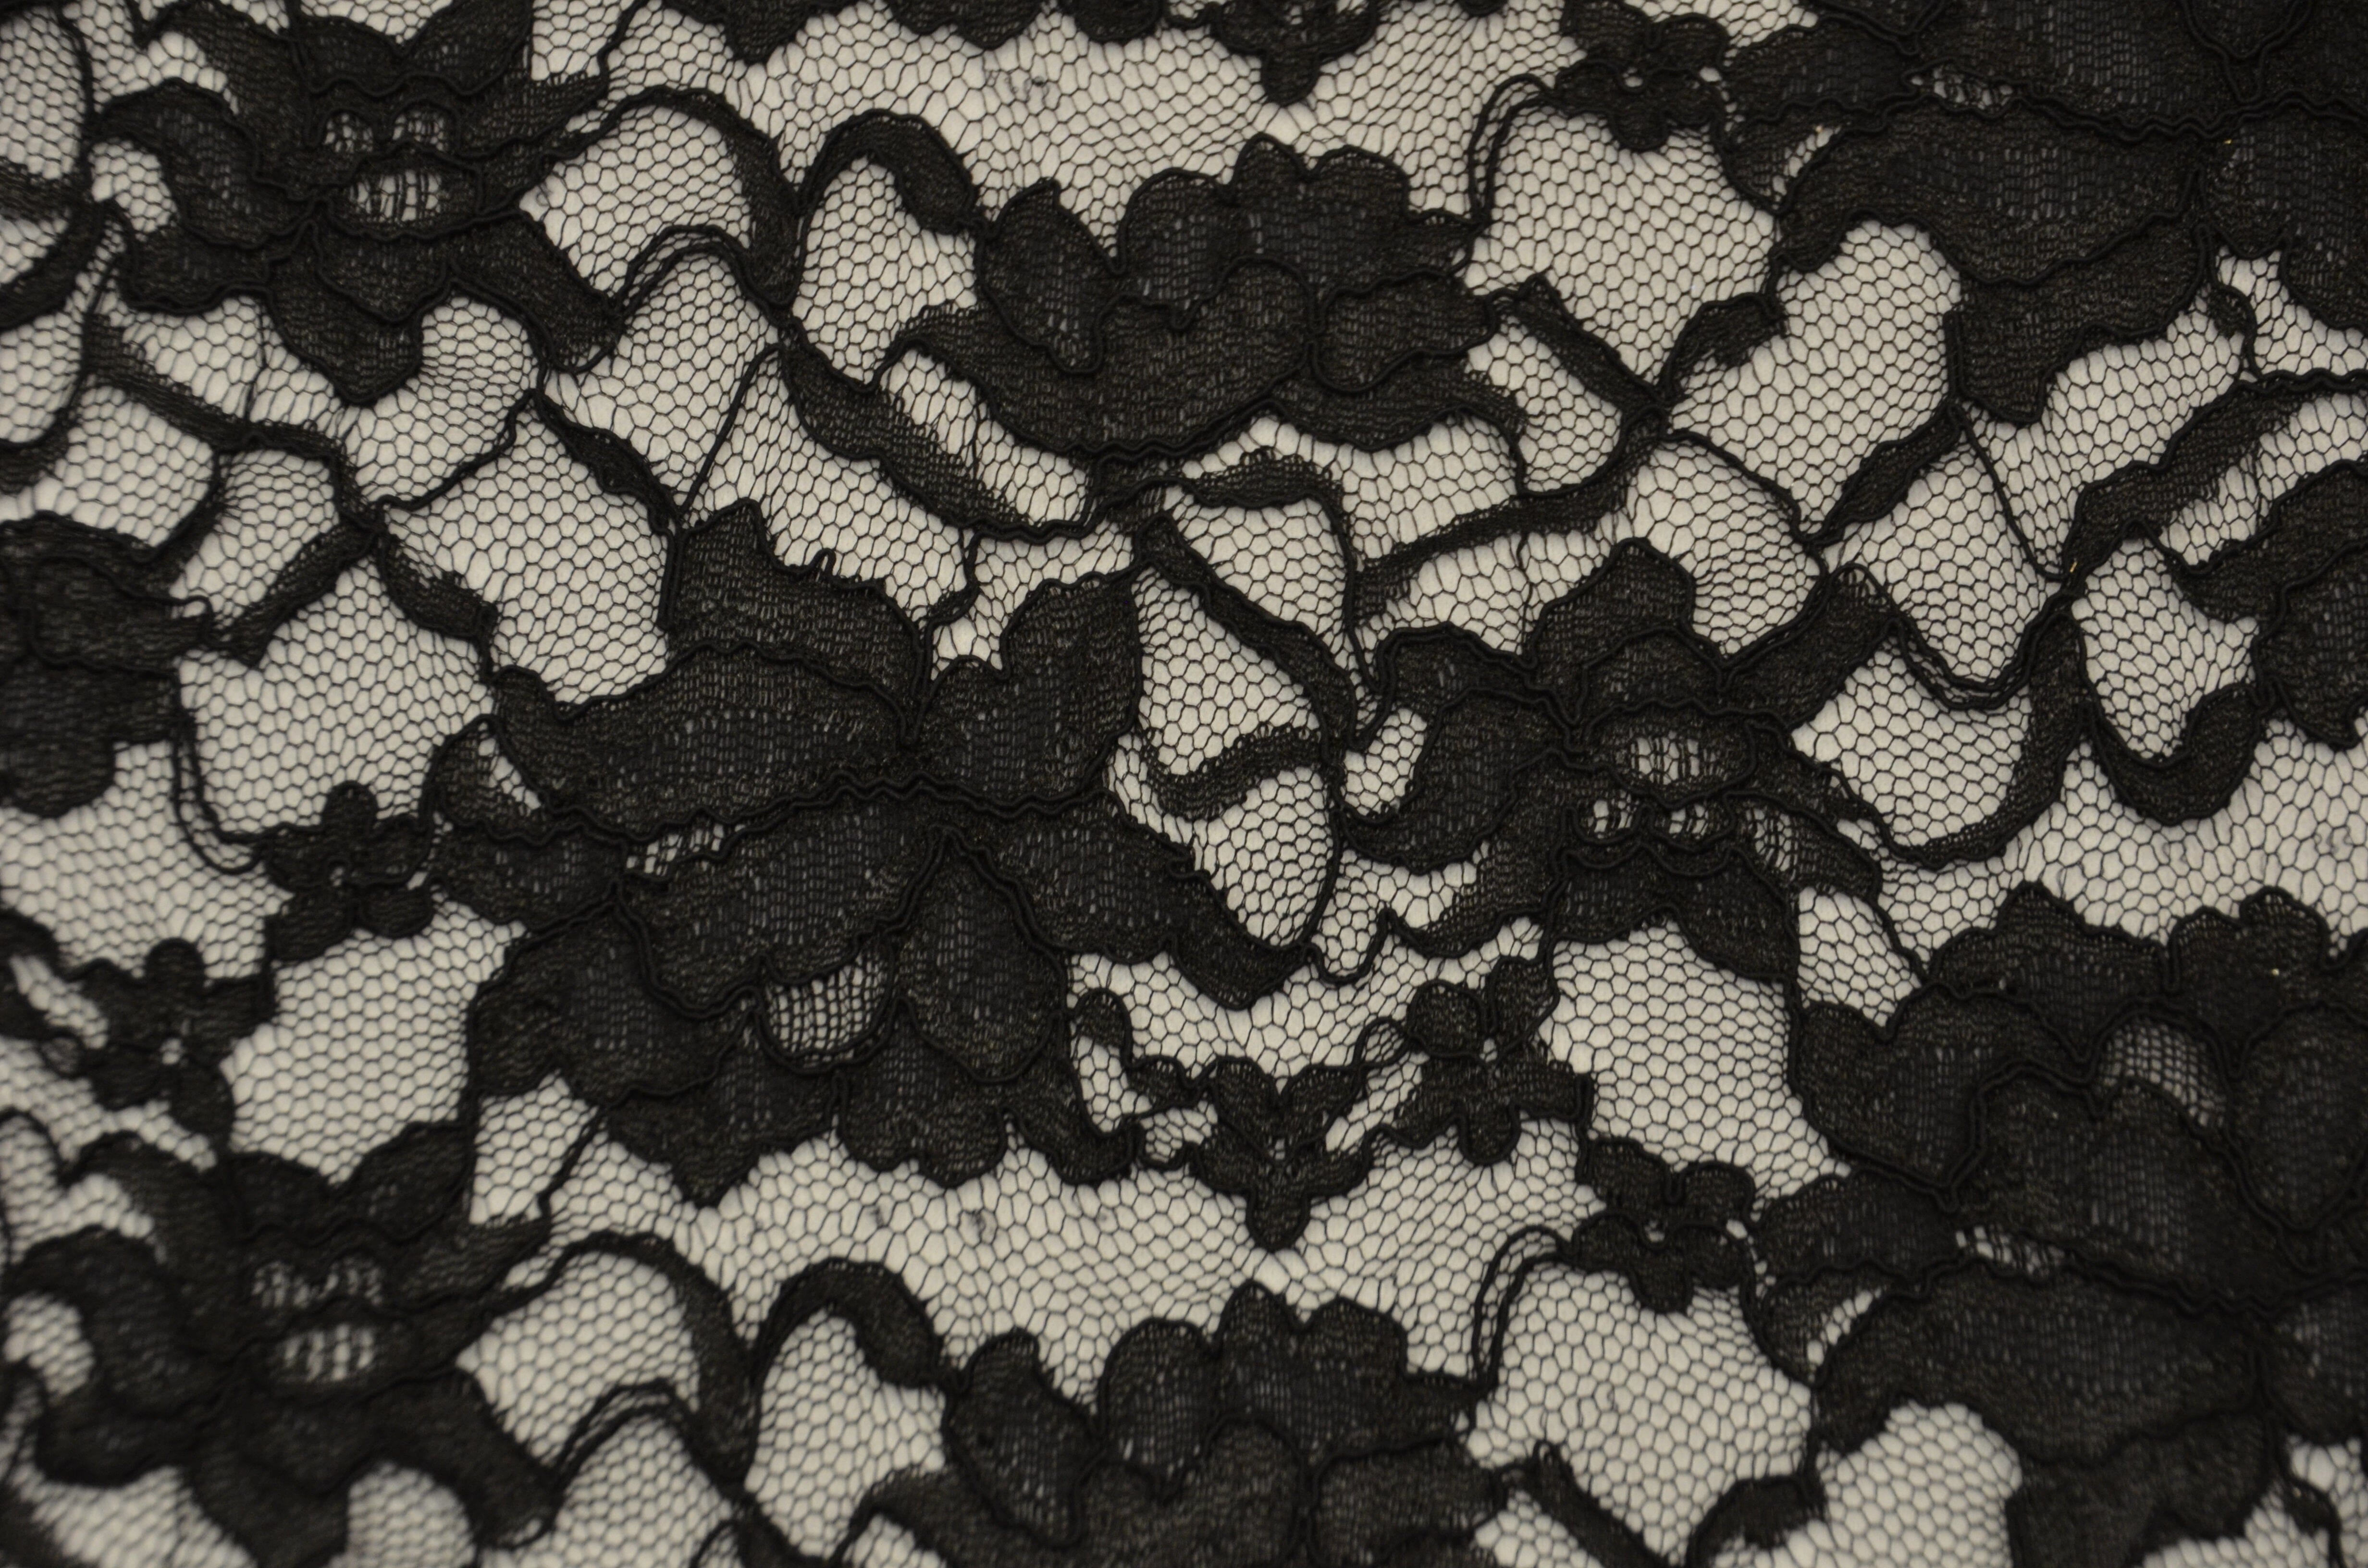 black lace texture